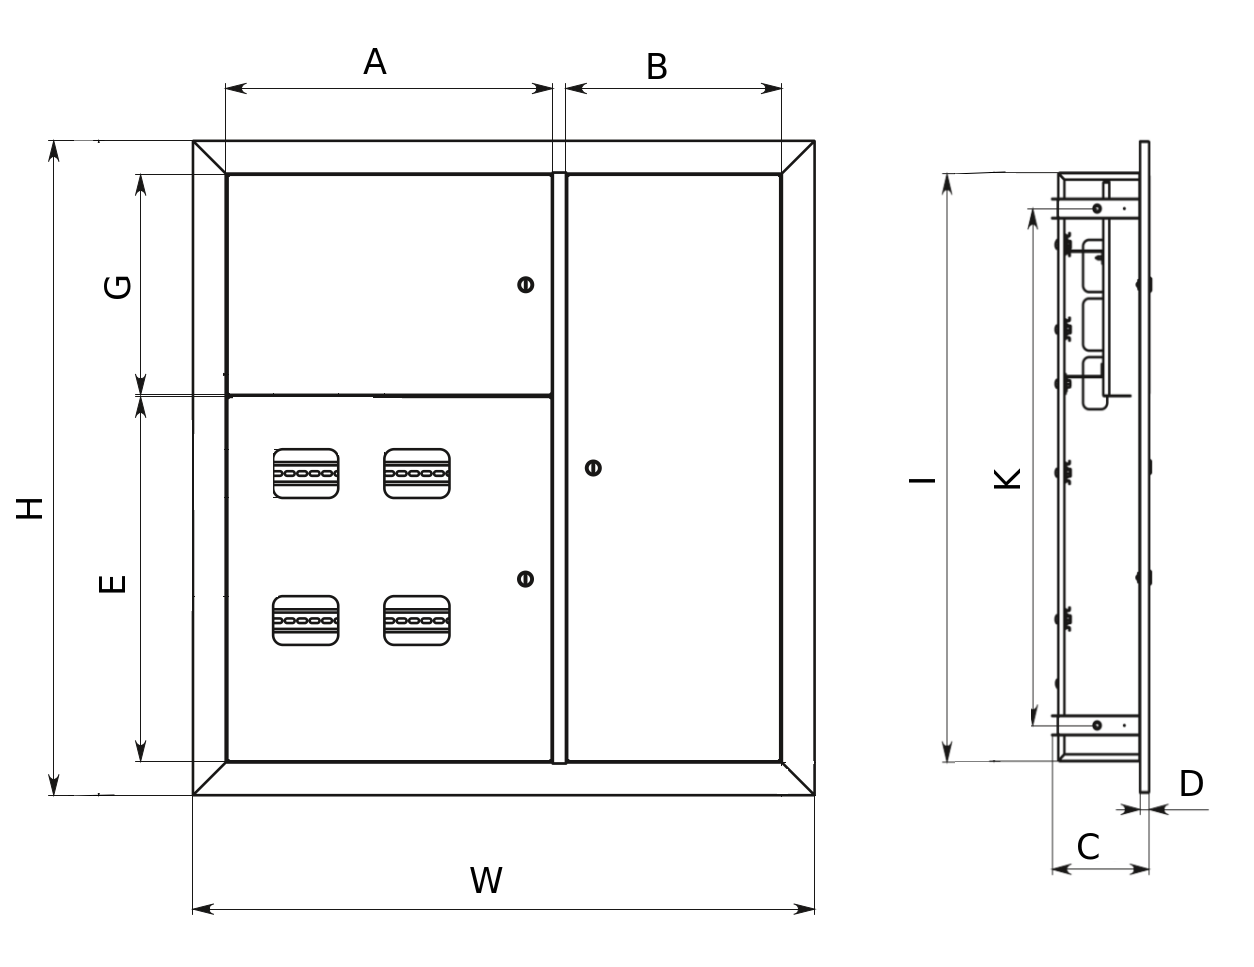 Щит этажный EKF Basic 6 кв. IP31, силовая часть – справа, материал – сталь, цвет – светло-серый